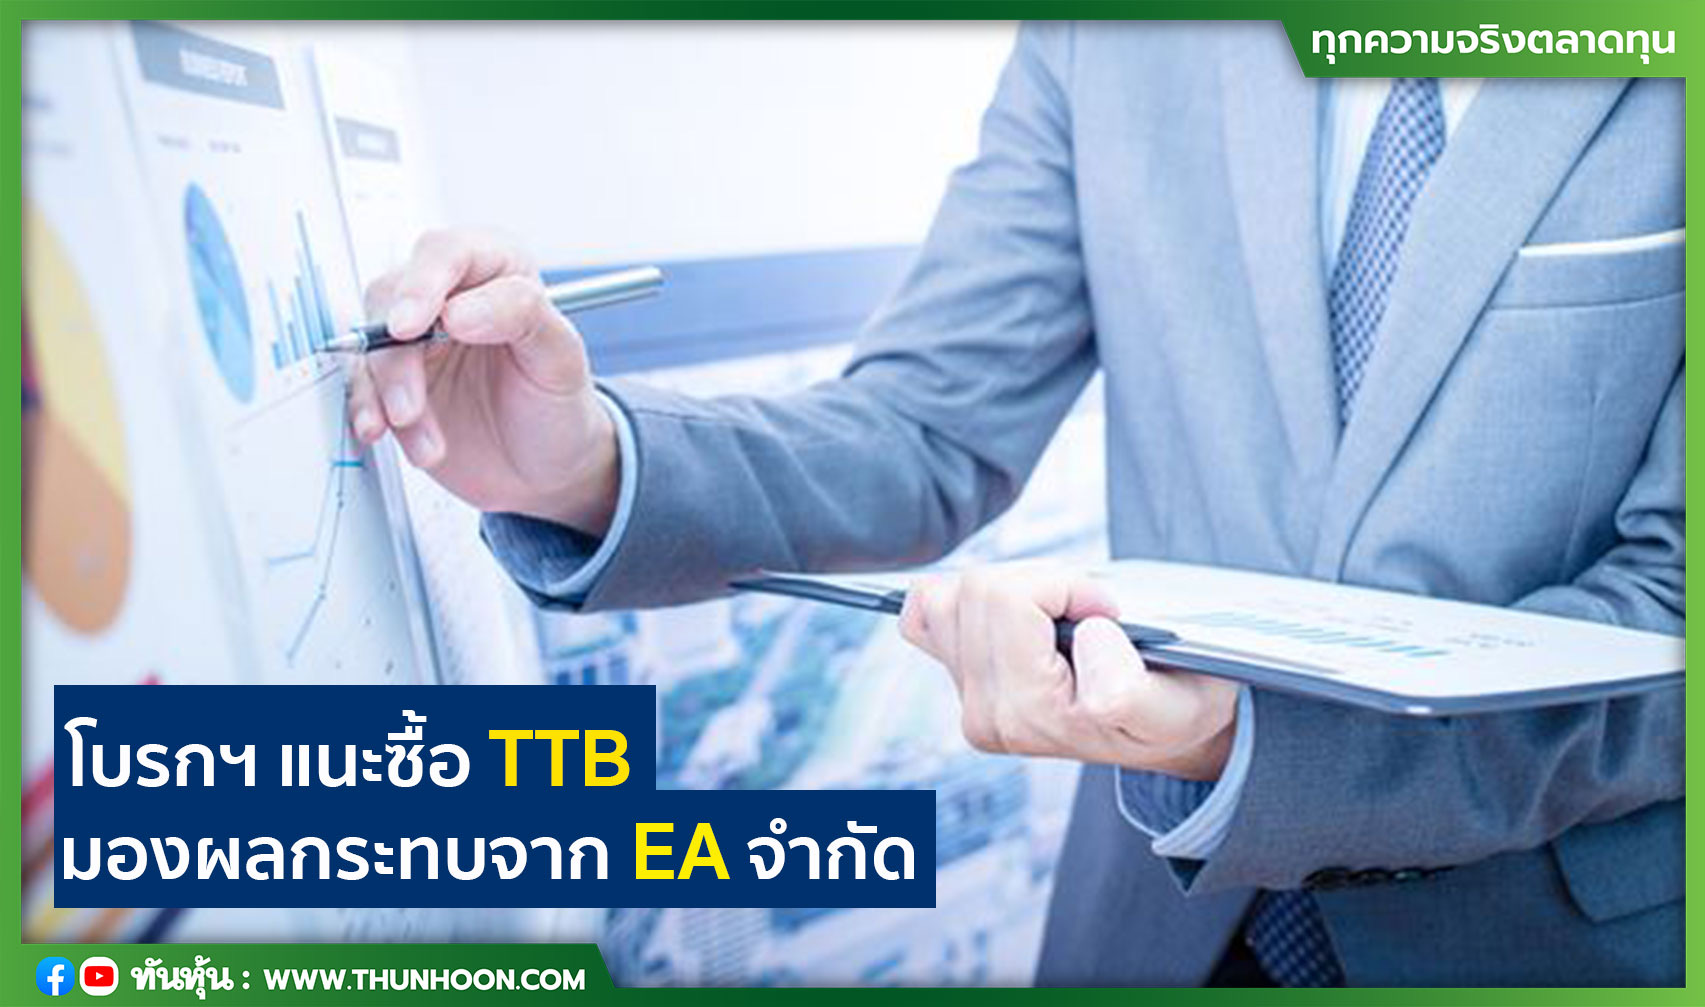 โบรกฯ แนะซื้อ TTB มองผลกระทบจาก EA จำกัด 